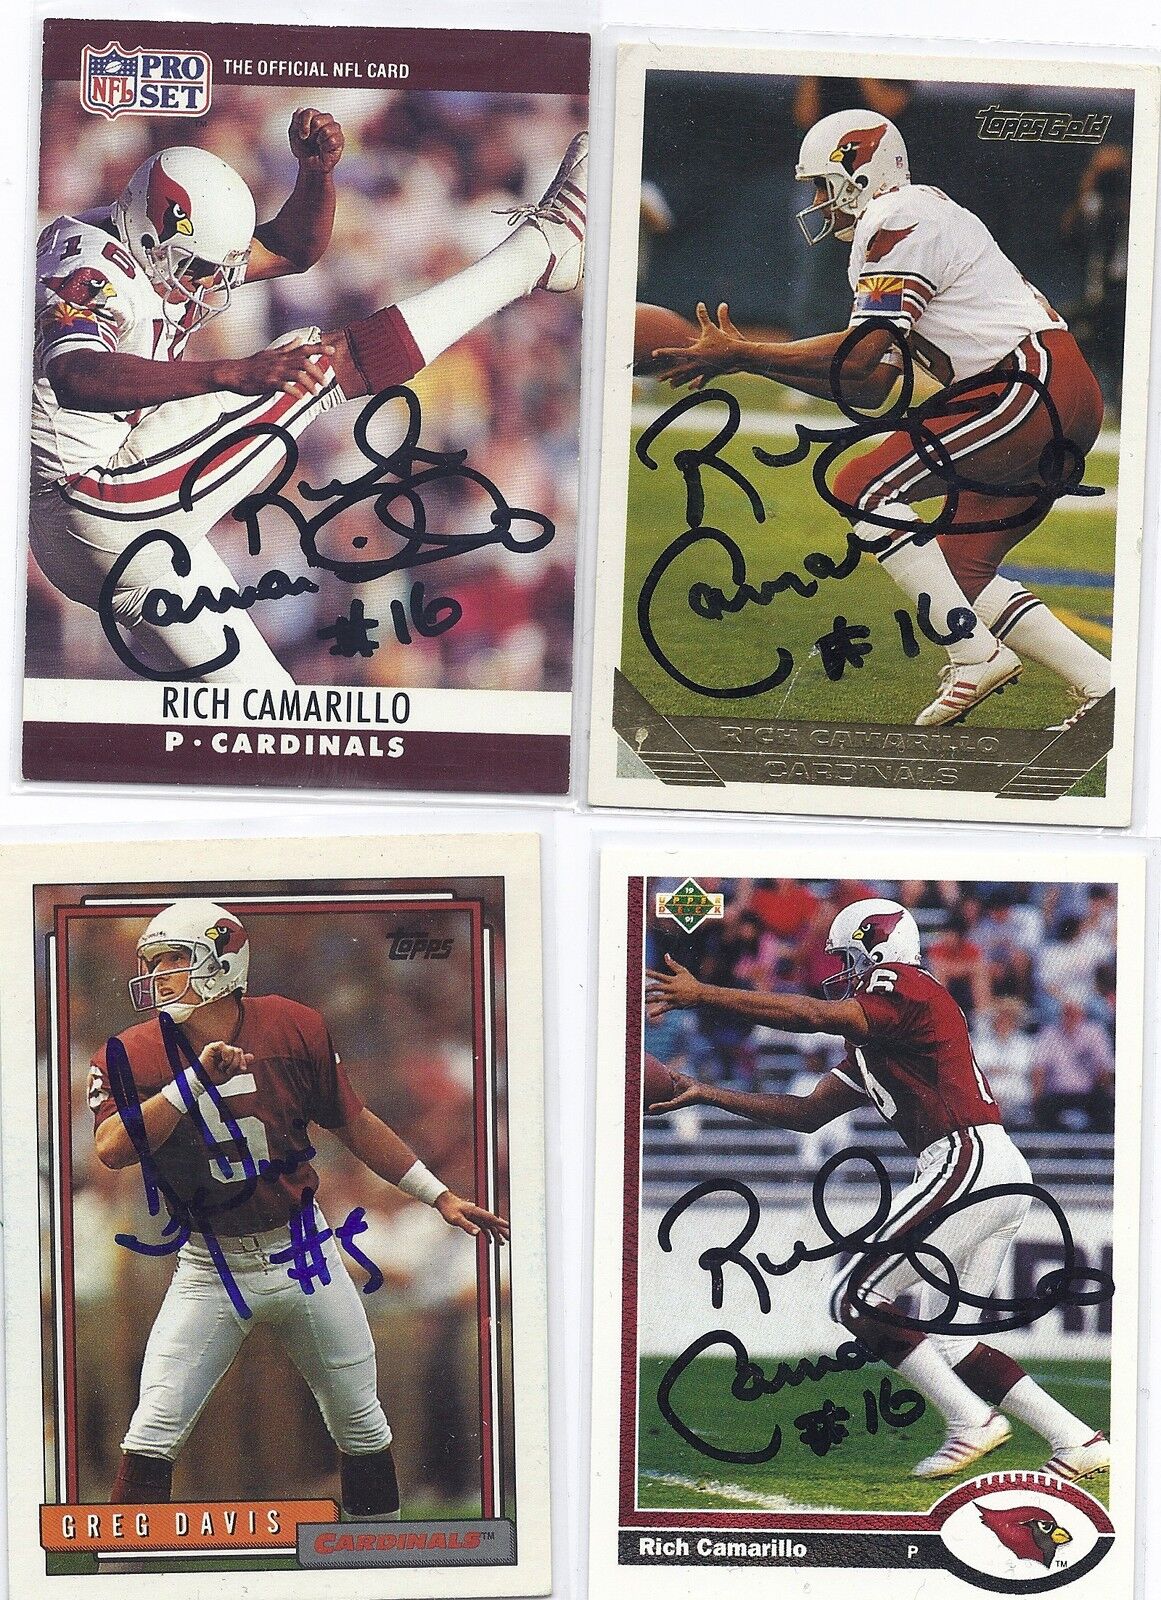 Greg Davis Signed / Autographed Football Card Arizona Cardinals 1992 Topps 